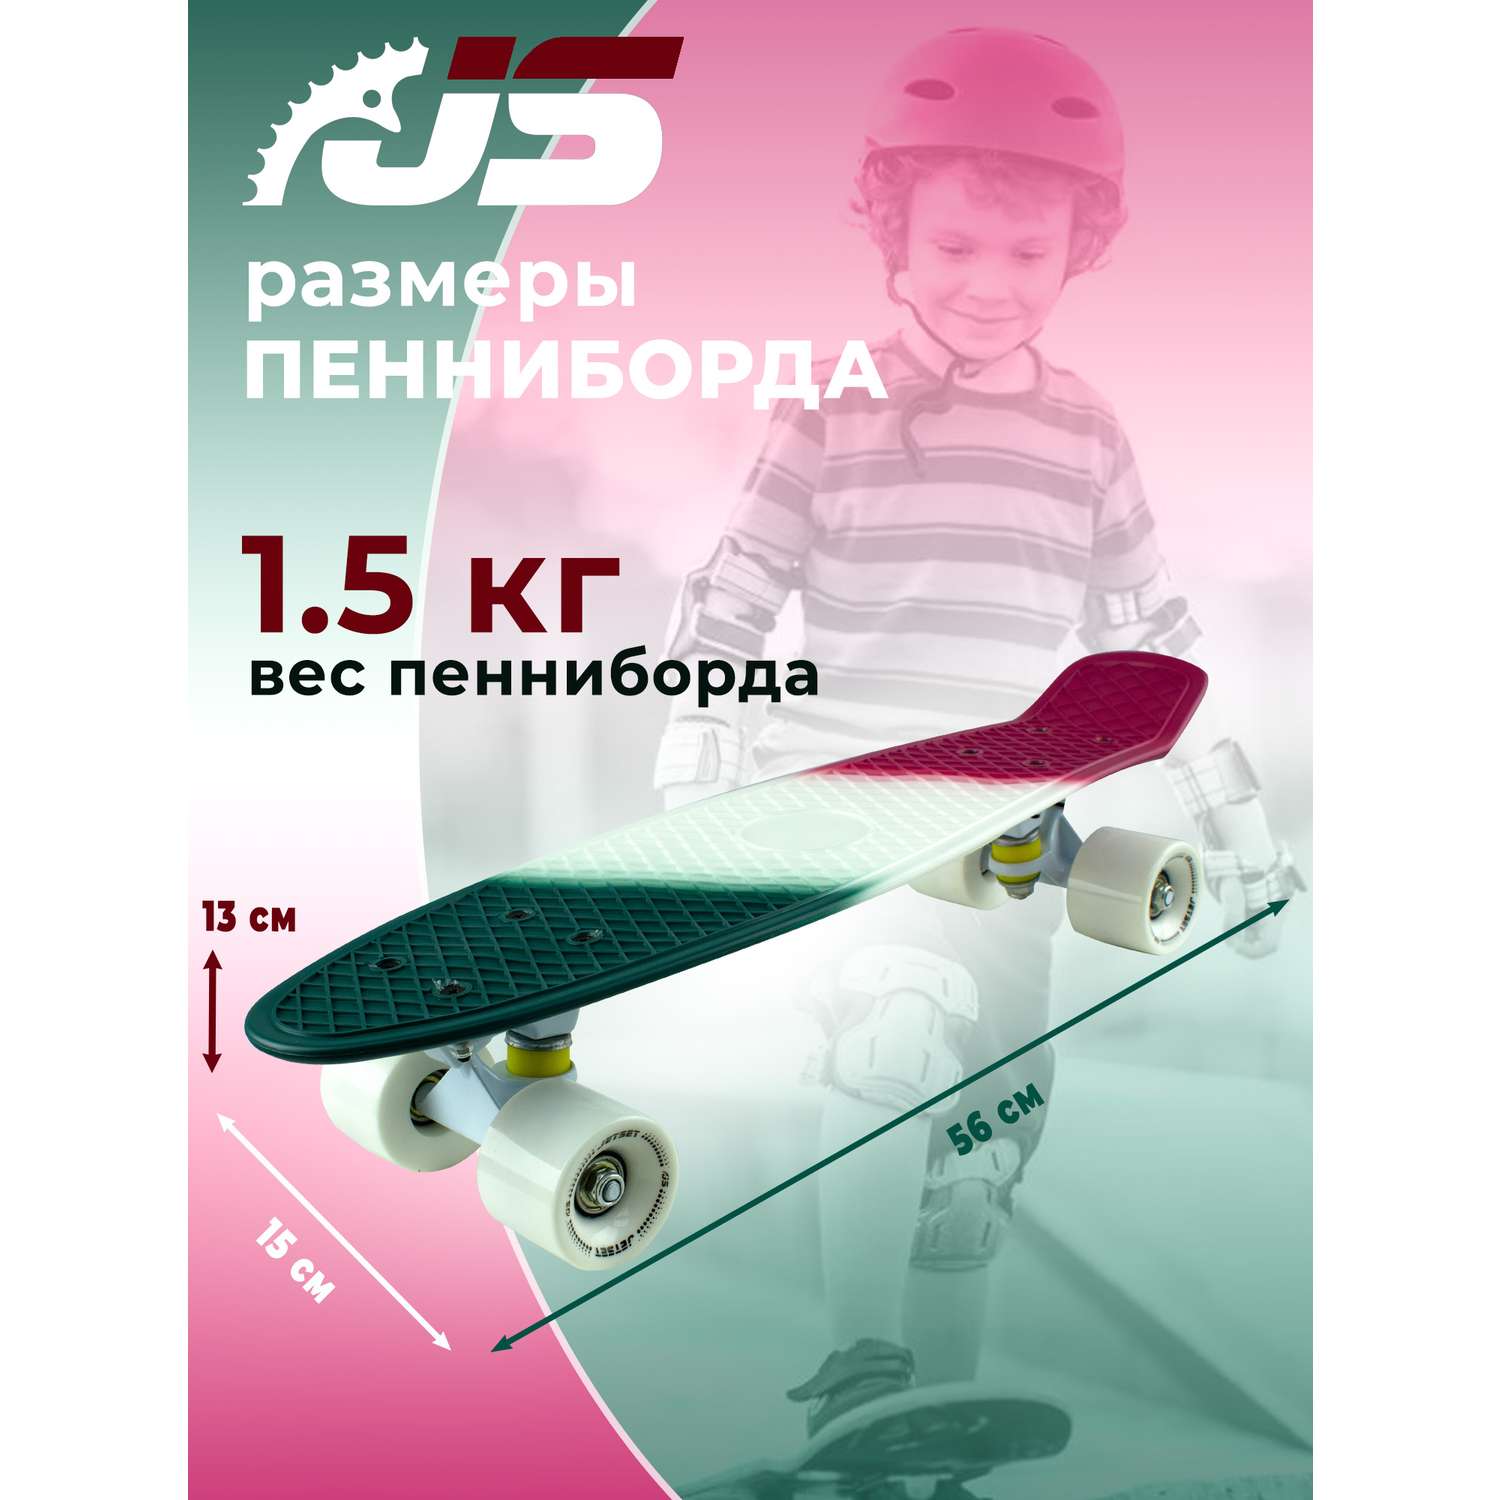 Скейтборд JETSET детский-розовый белый зеленый - фото 2